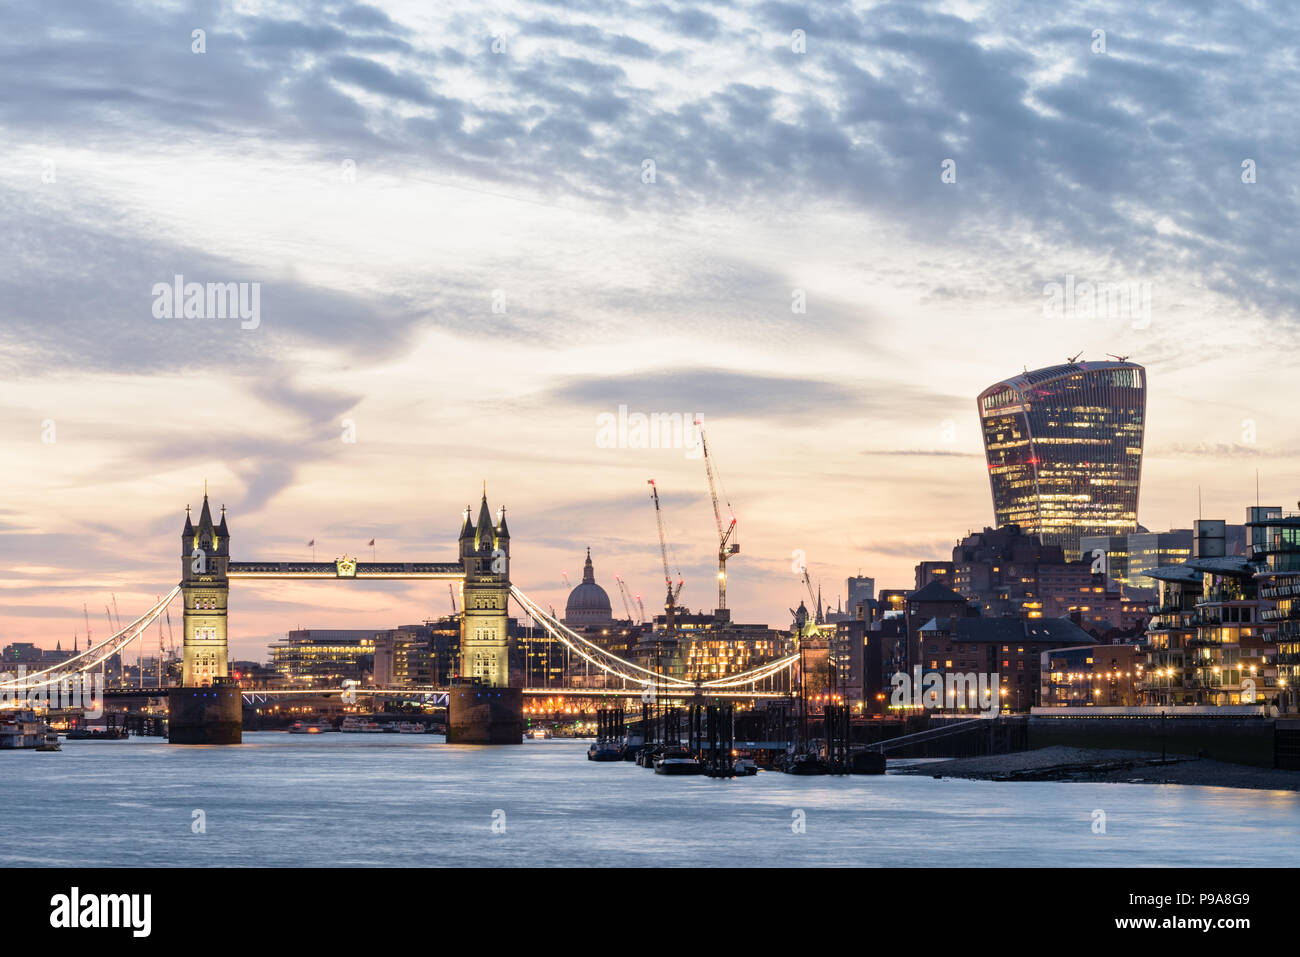 Vista desde el Támesis en Bermondsey, Londres, el Puente de la torre, el walkie talkie y otros edificios riverside iluminado al atardecer con un cielo naranja Foto de stock